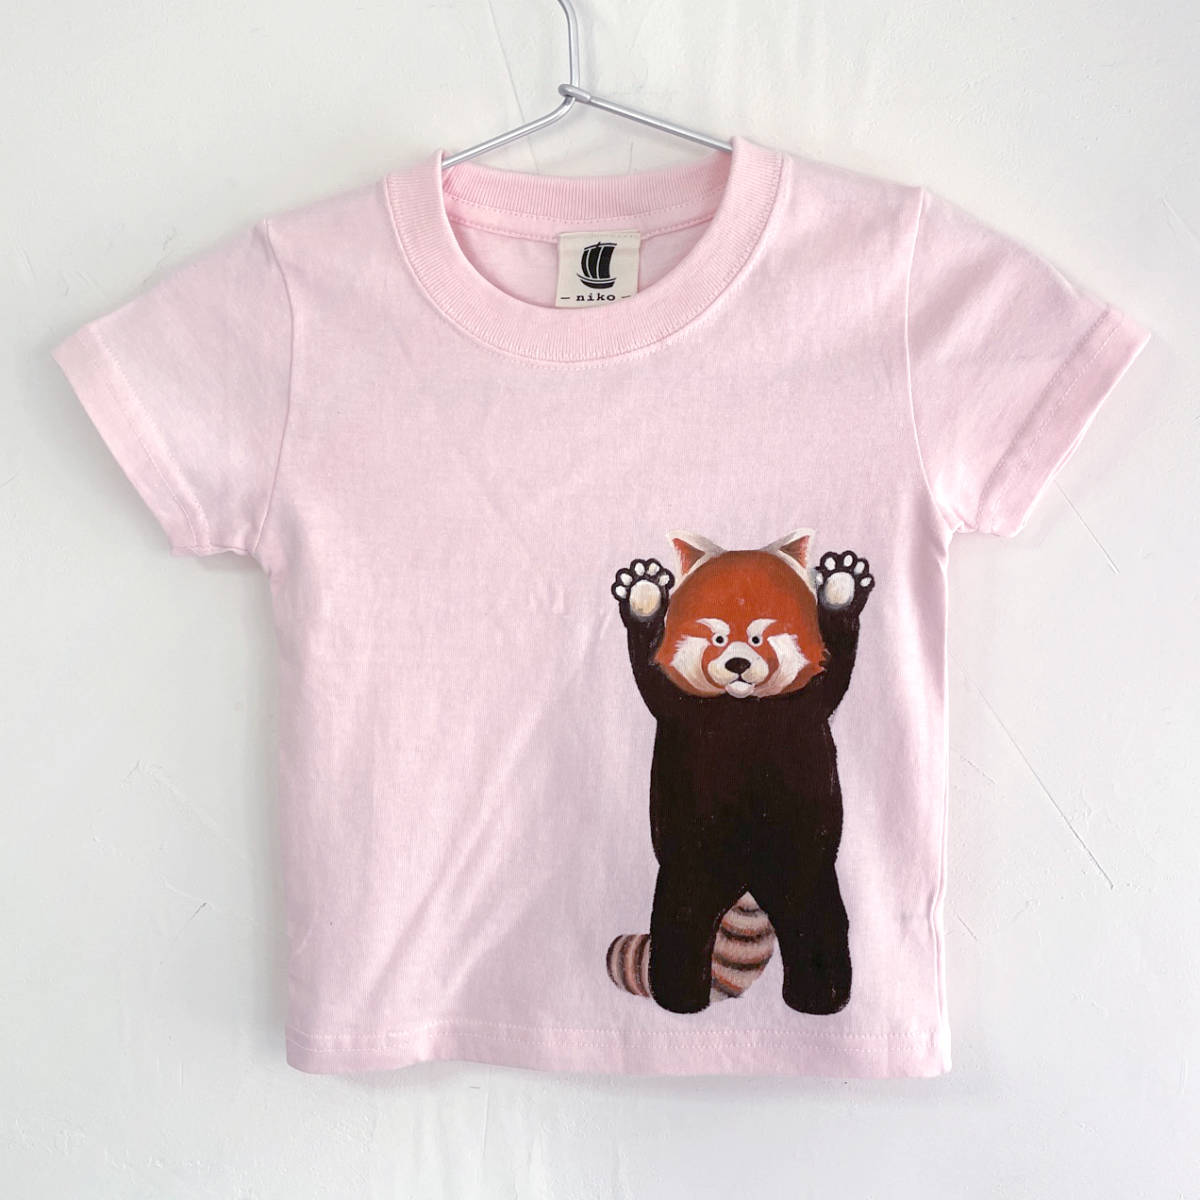 키즈 티셔츠, 사이즈 120, 분홍색, 레드 팬더 프린트 티셔츠, 하얀색, 수공, 손으로 그린 티셔츠, 동물, 상의, 반소매 티셔츠, 120(115~124cm)